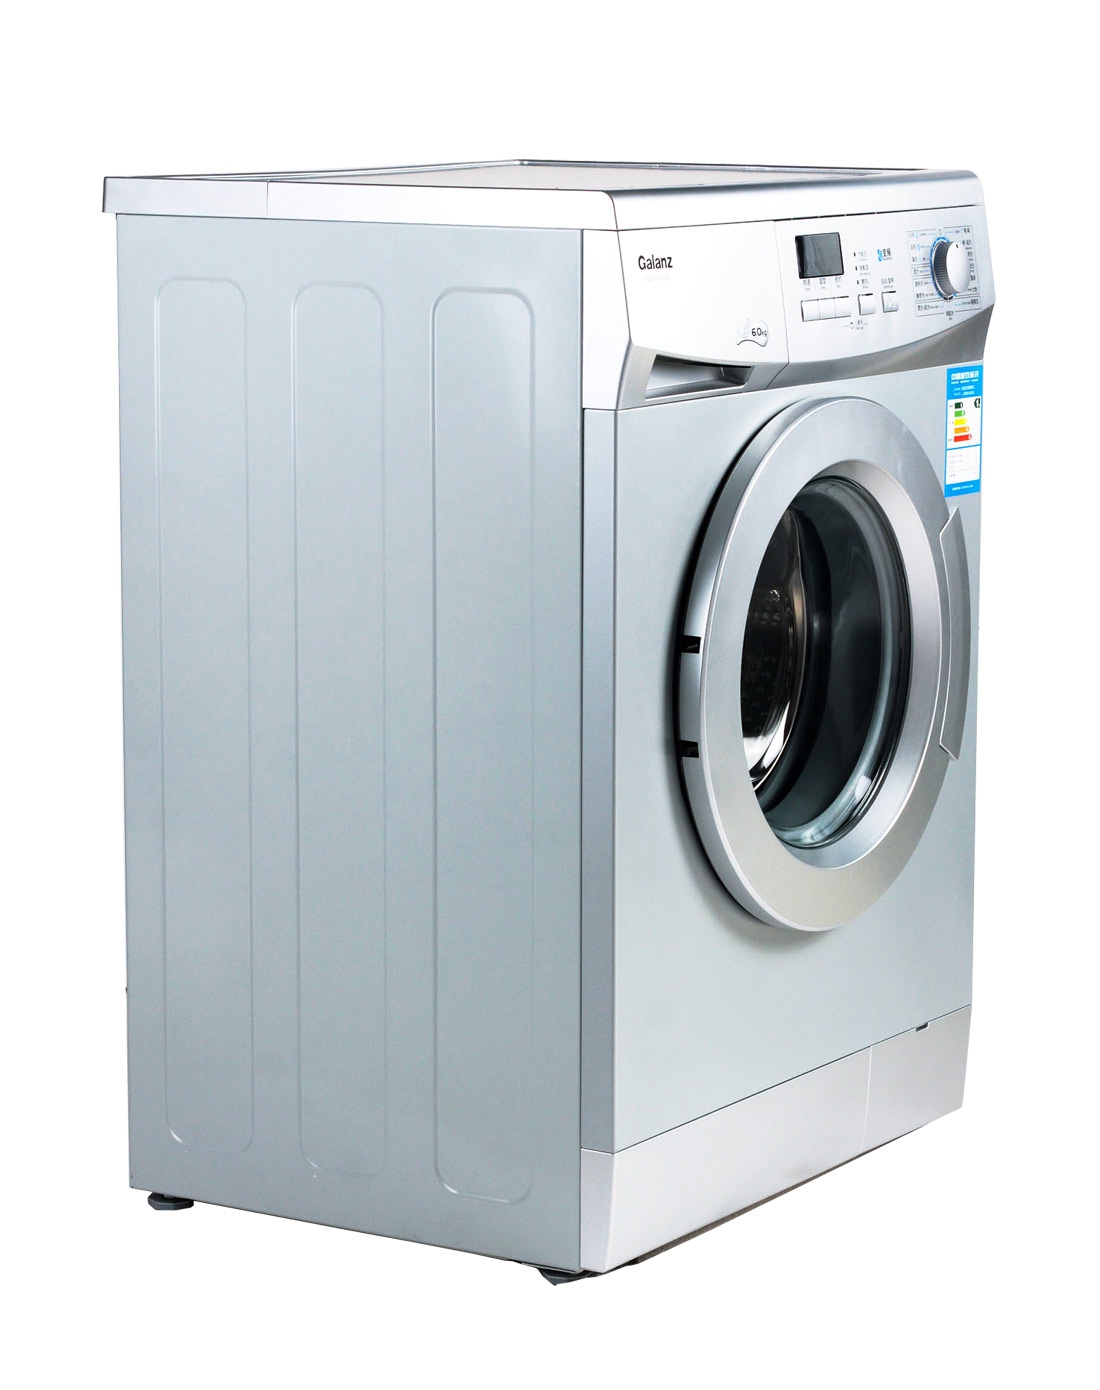 格兰仕洗衣机E3图片